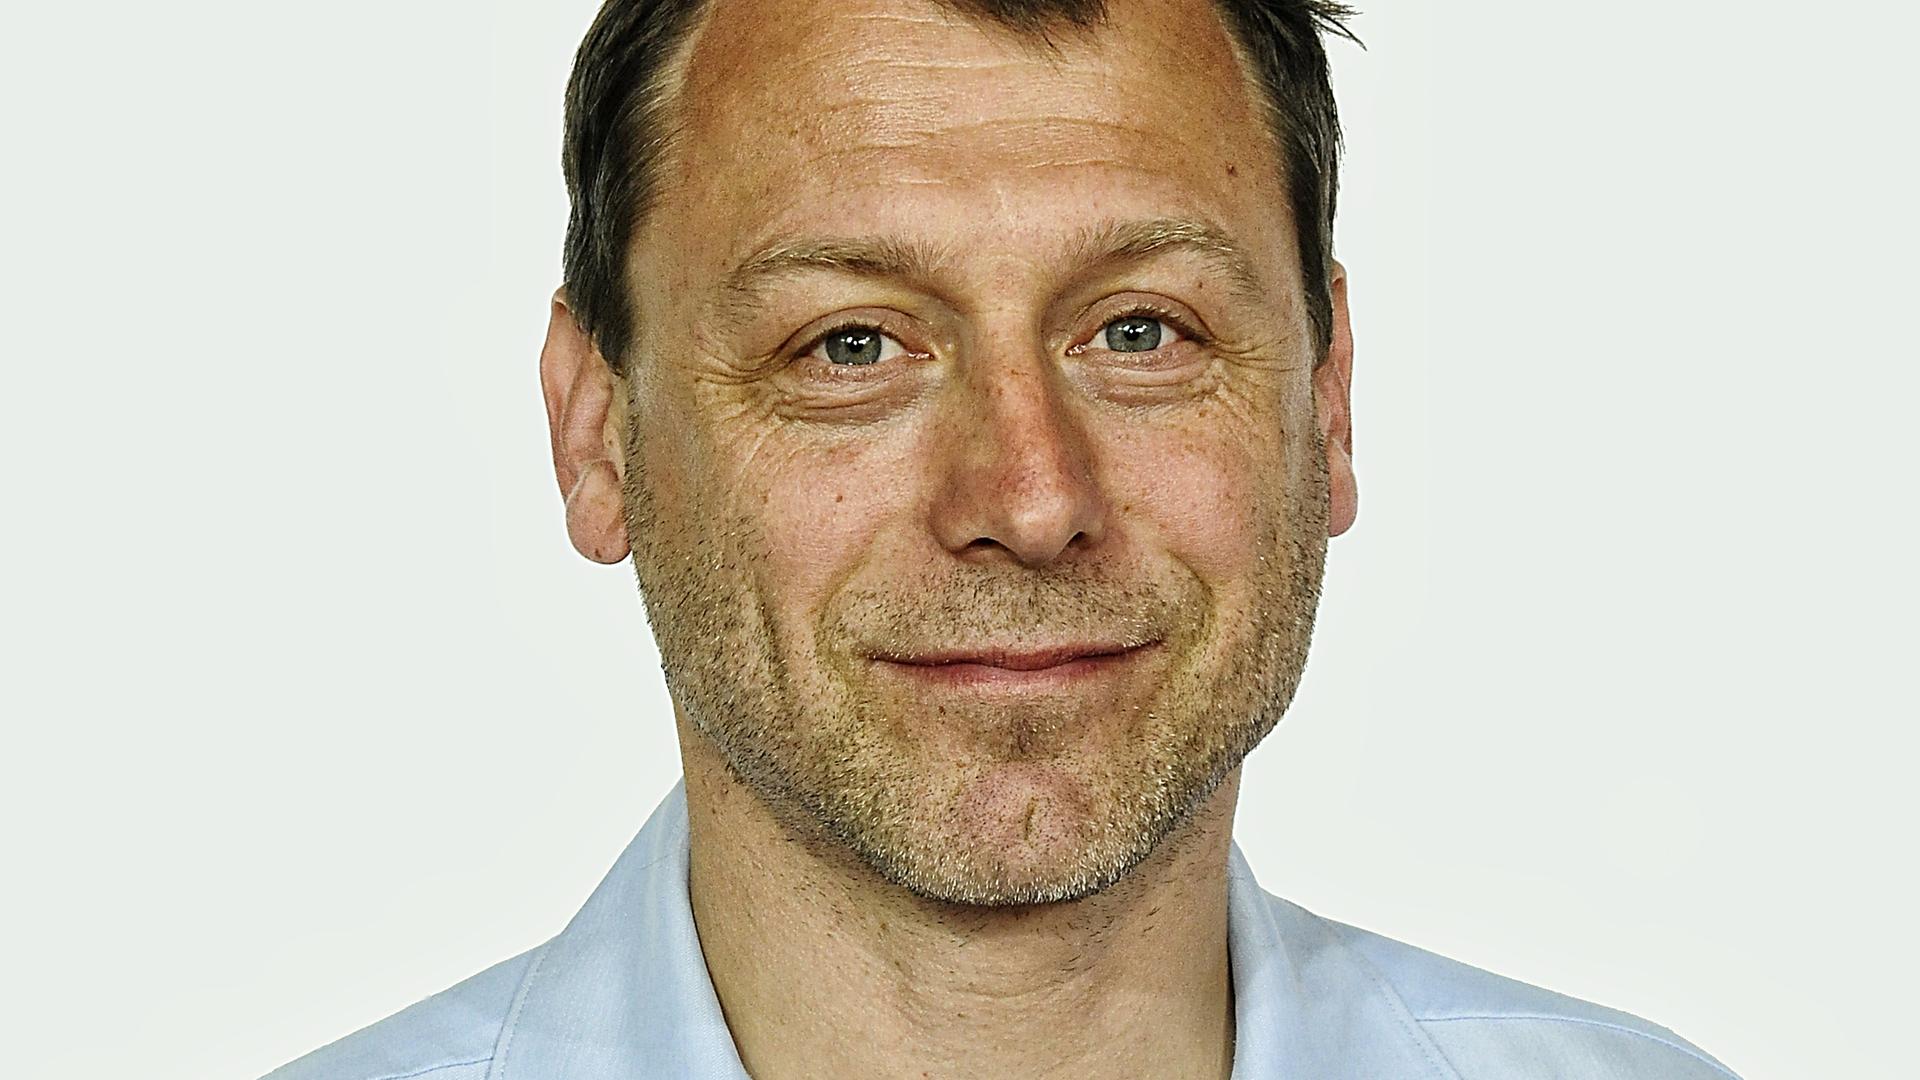 Der Kameramann Marcus Winterbauer, nominiert für den Deutschen Kamerapreis 2011, posiert am 29.05.2011 in Köln bei der Präsentation von "Herbstgold".